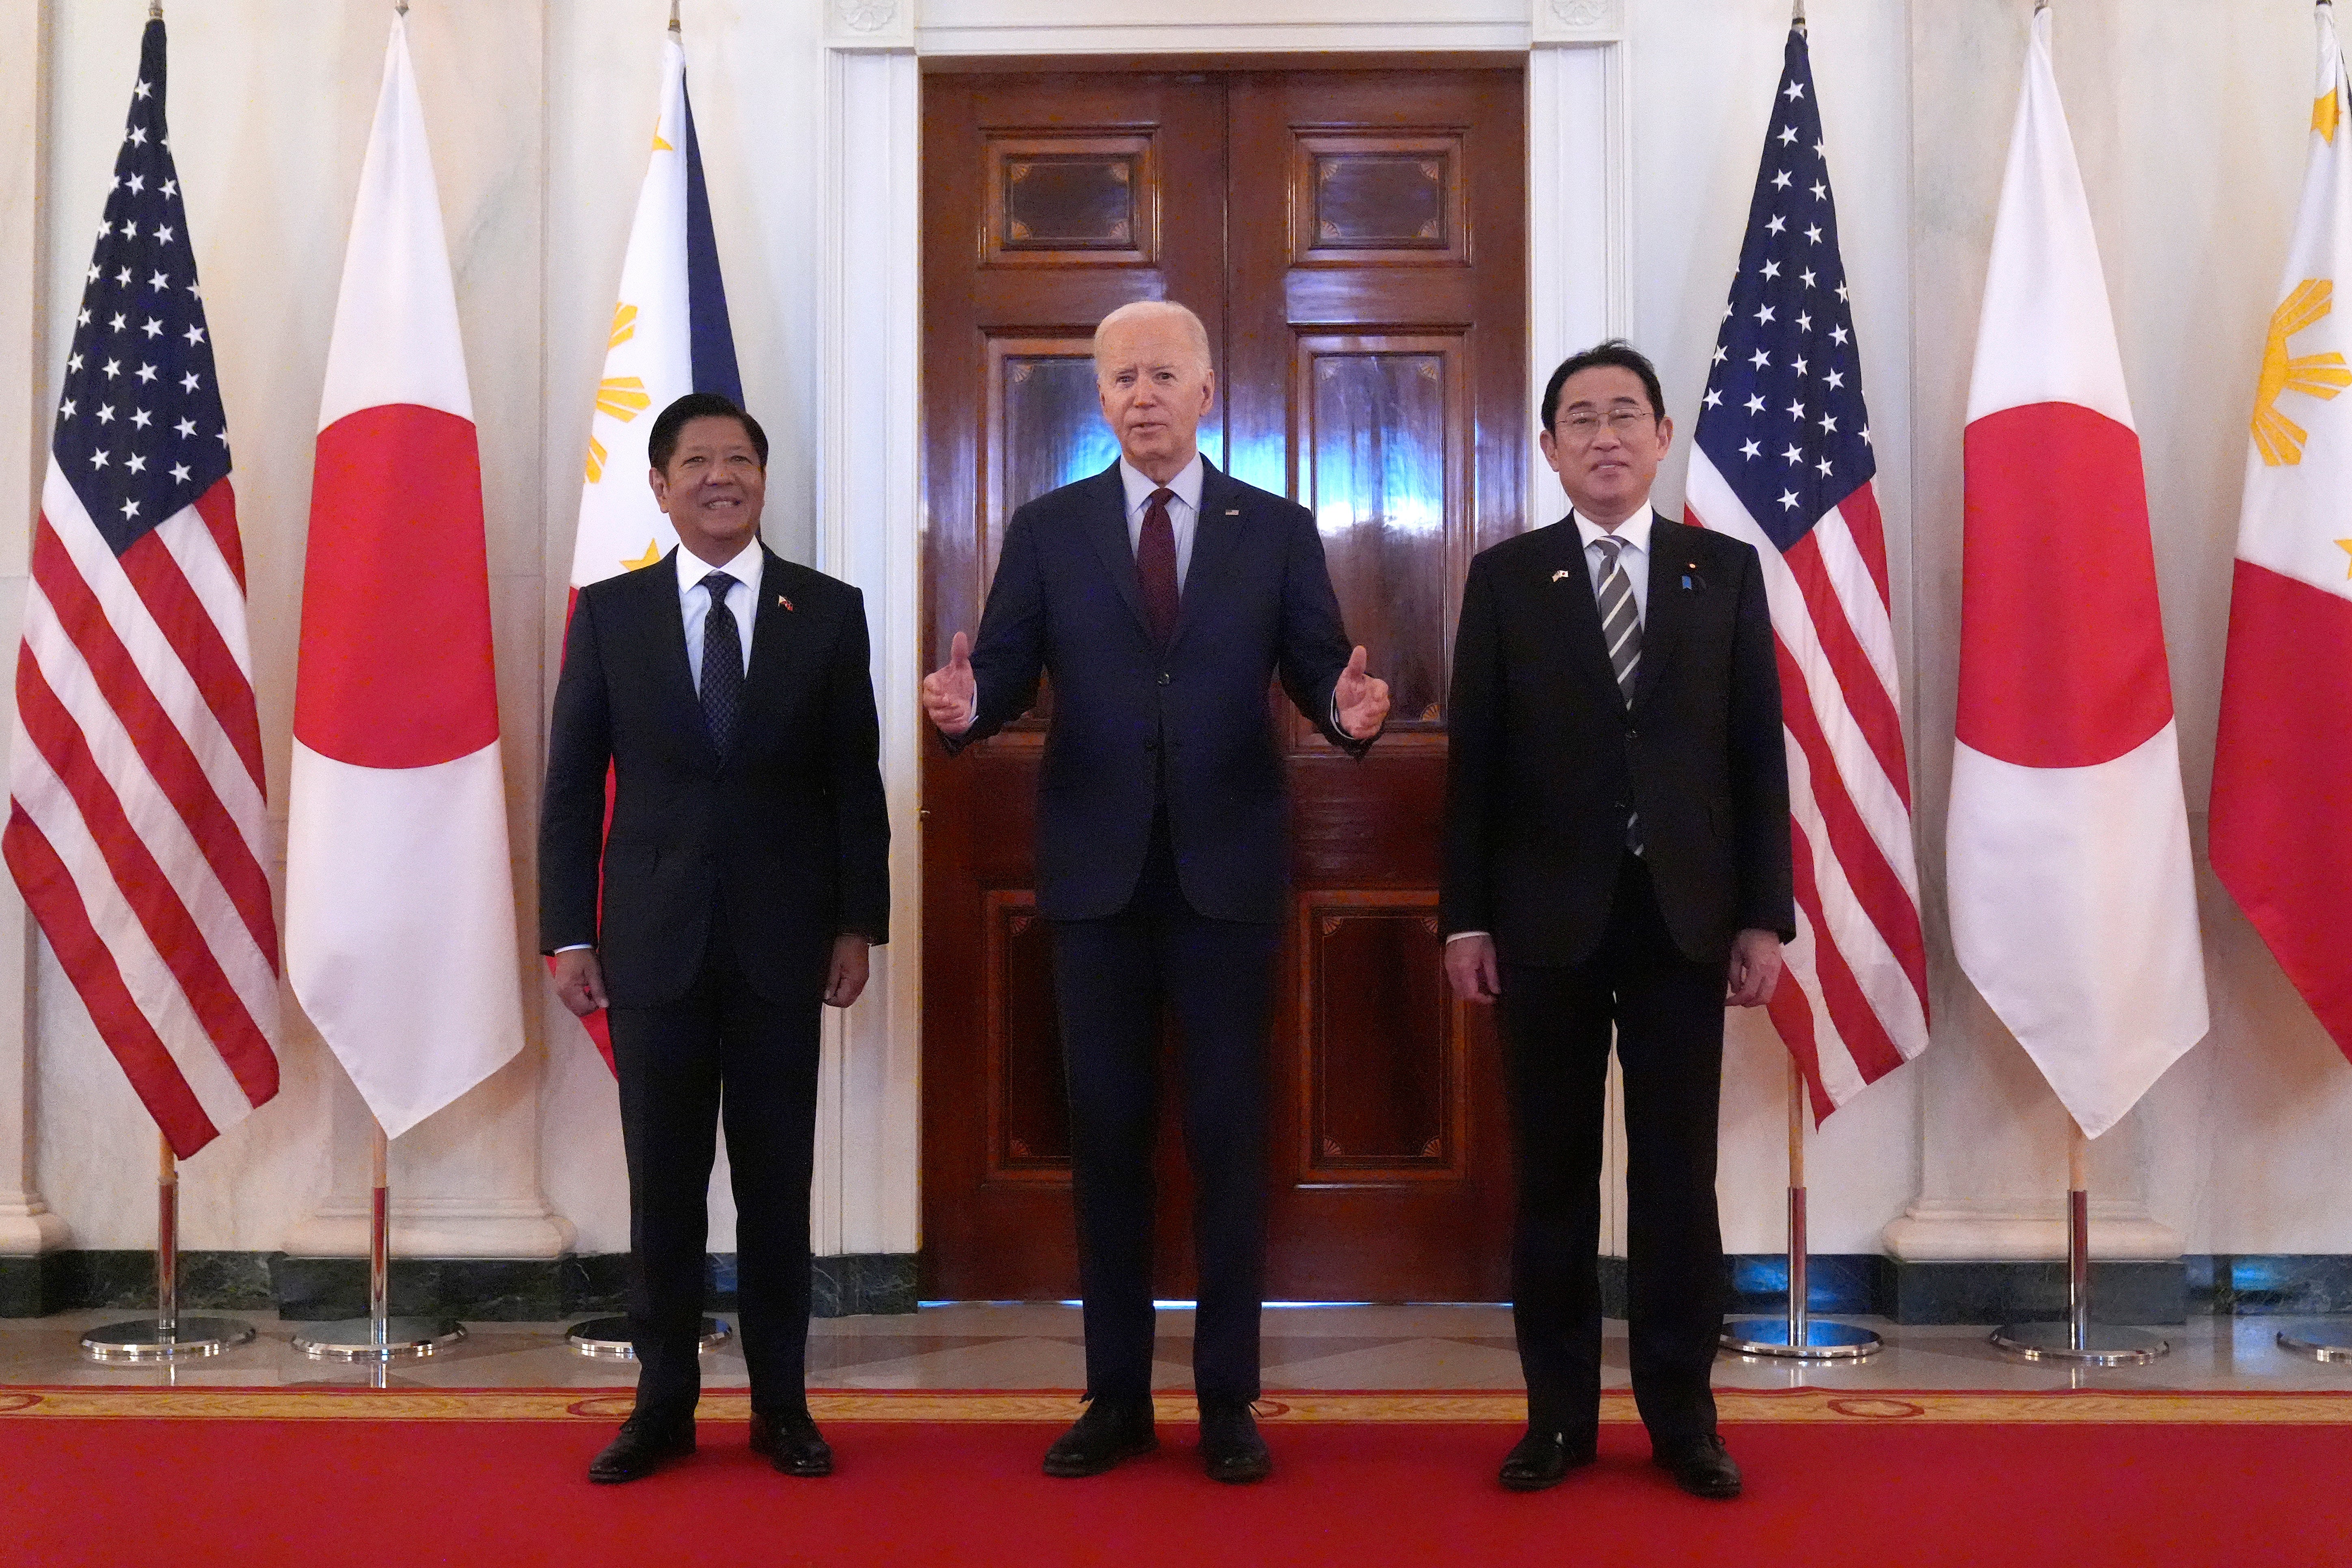 President Joe Biden, center, speaks alongside Philippine President Ferdinand Marcos Jr., left, and Japanese Prime Minister Fumio Kishida before a trilateral meeting